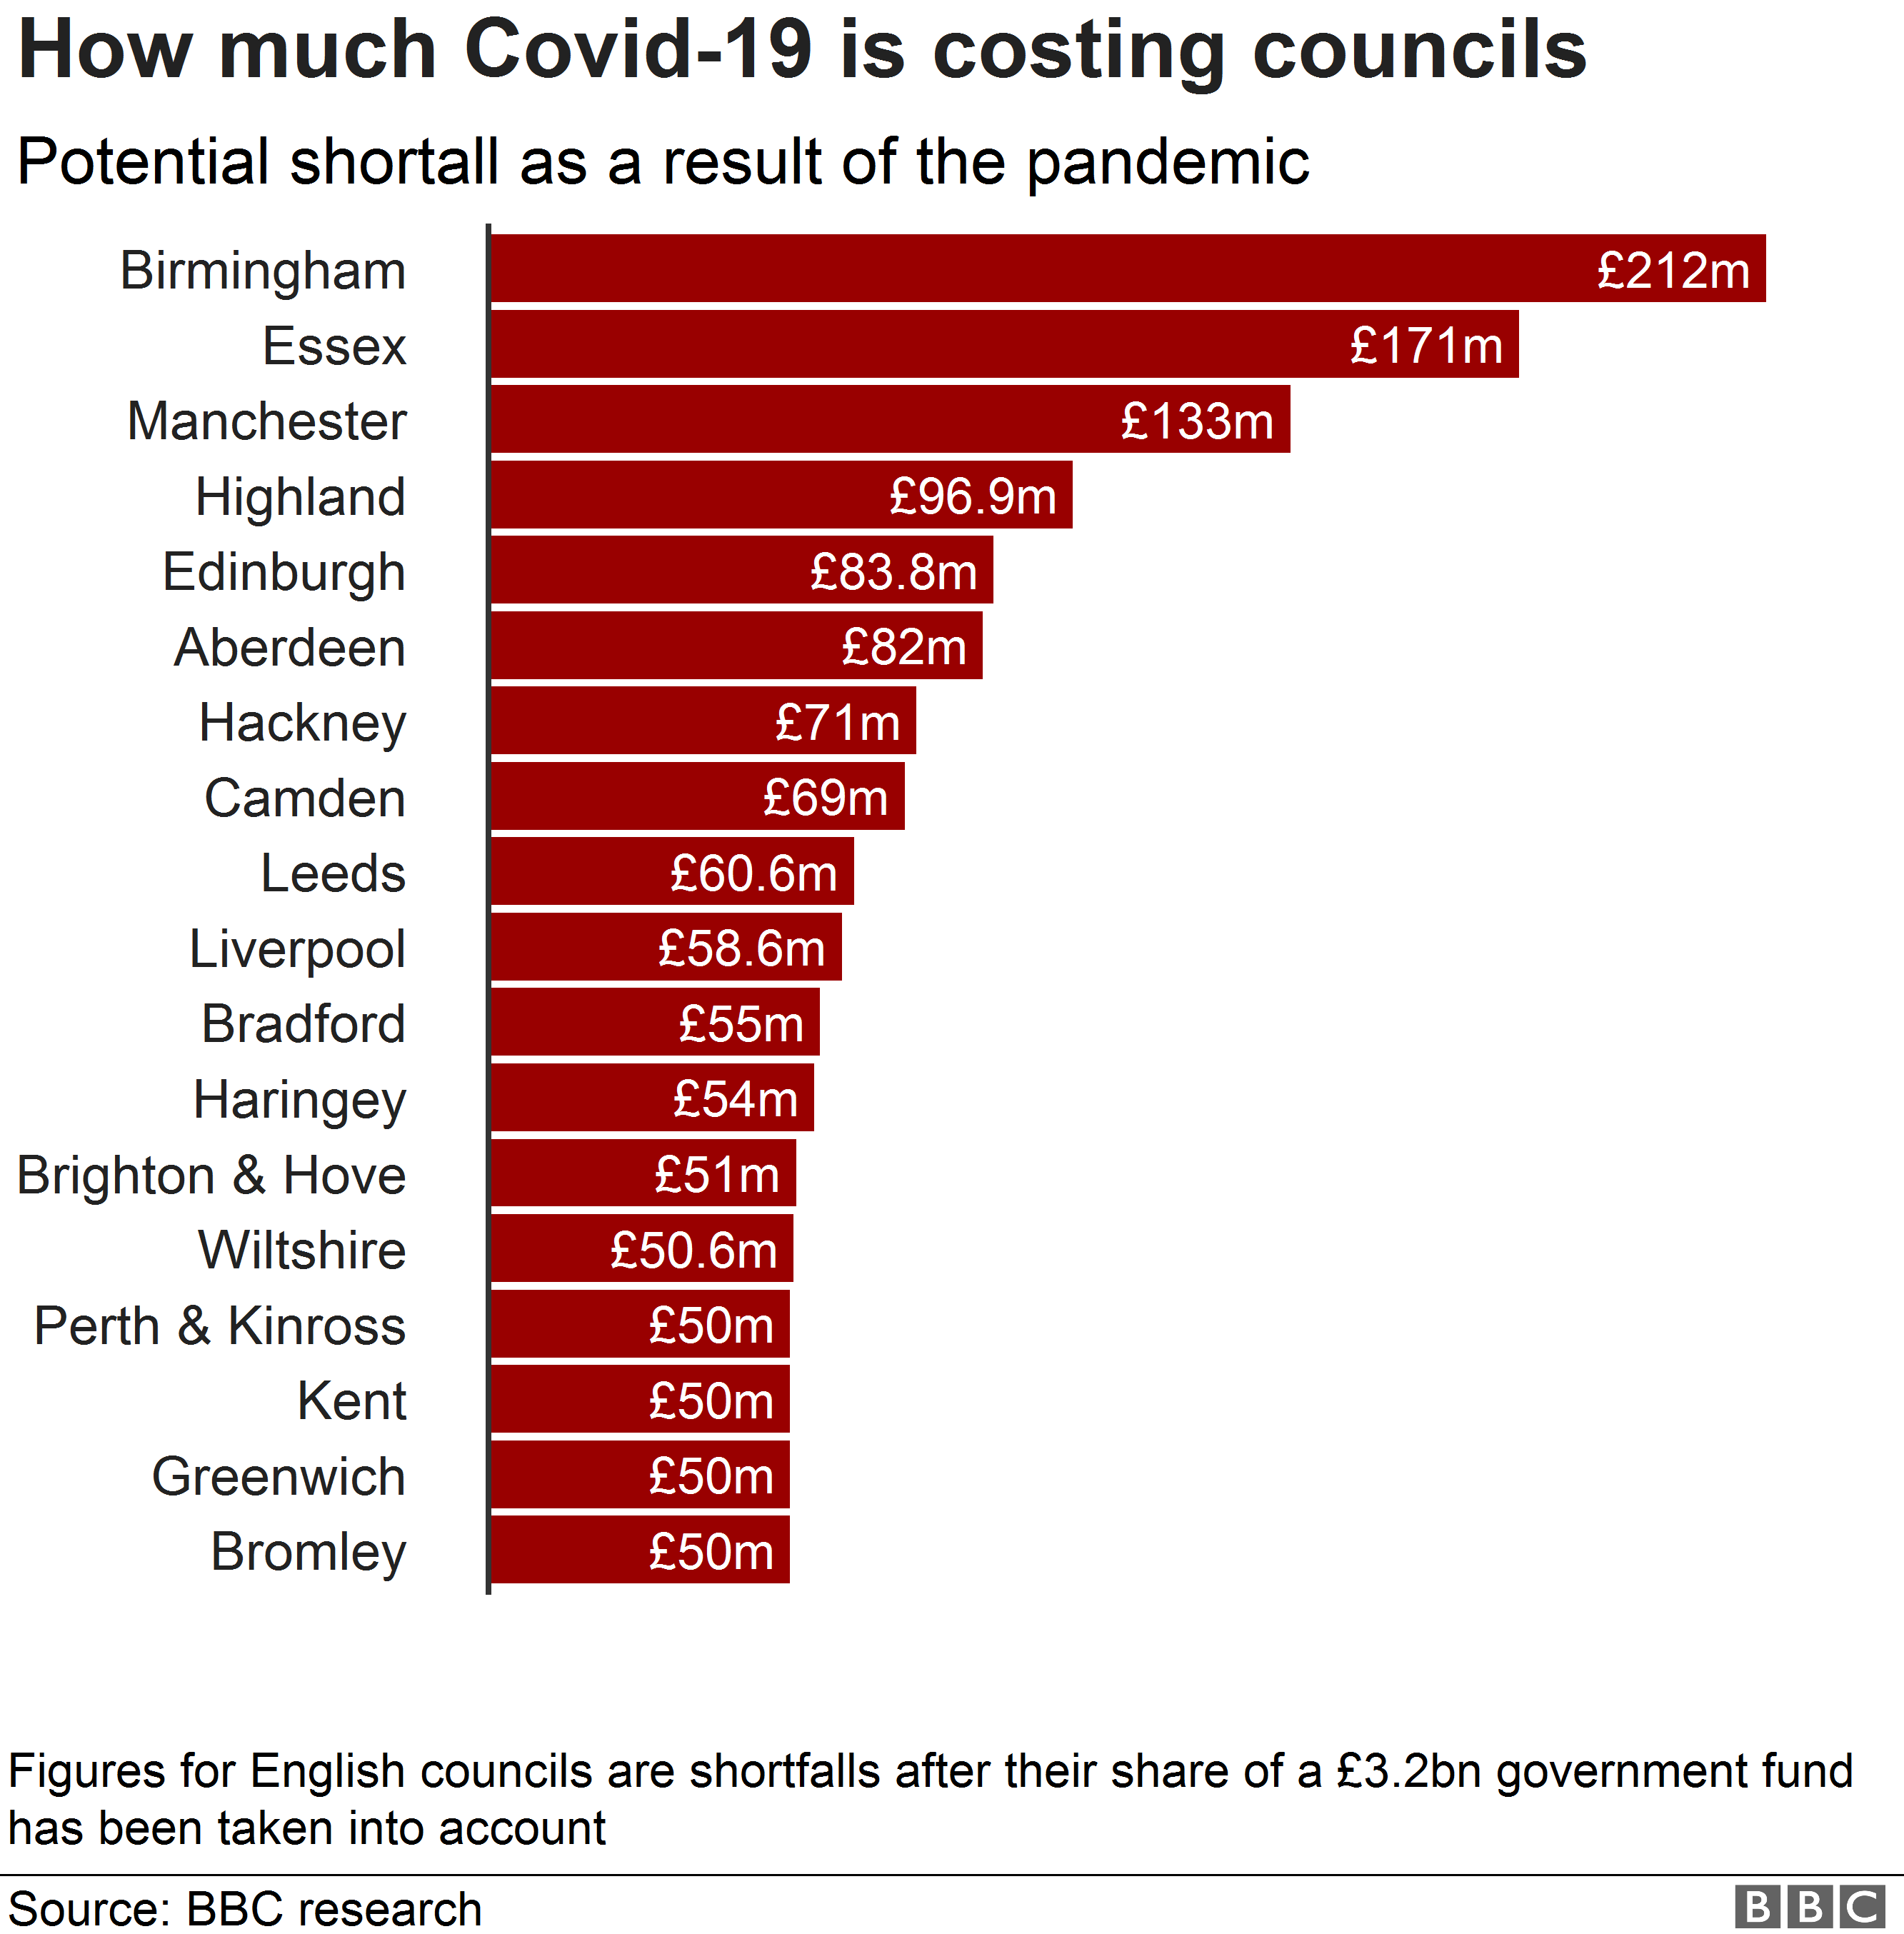 Диаграмма, показывающая советы советов с потенциальным дефицитом более 50 миллионов фунтов стерлингов в результате Covid-19